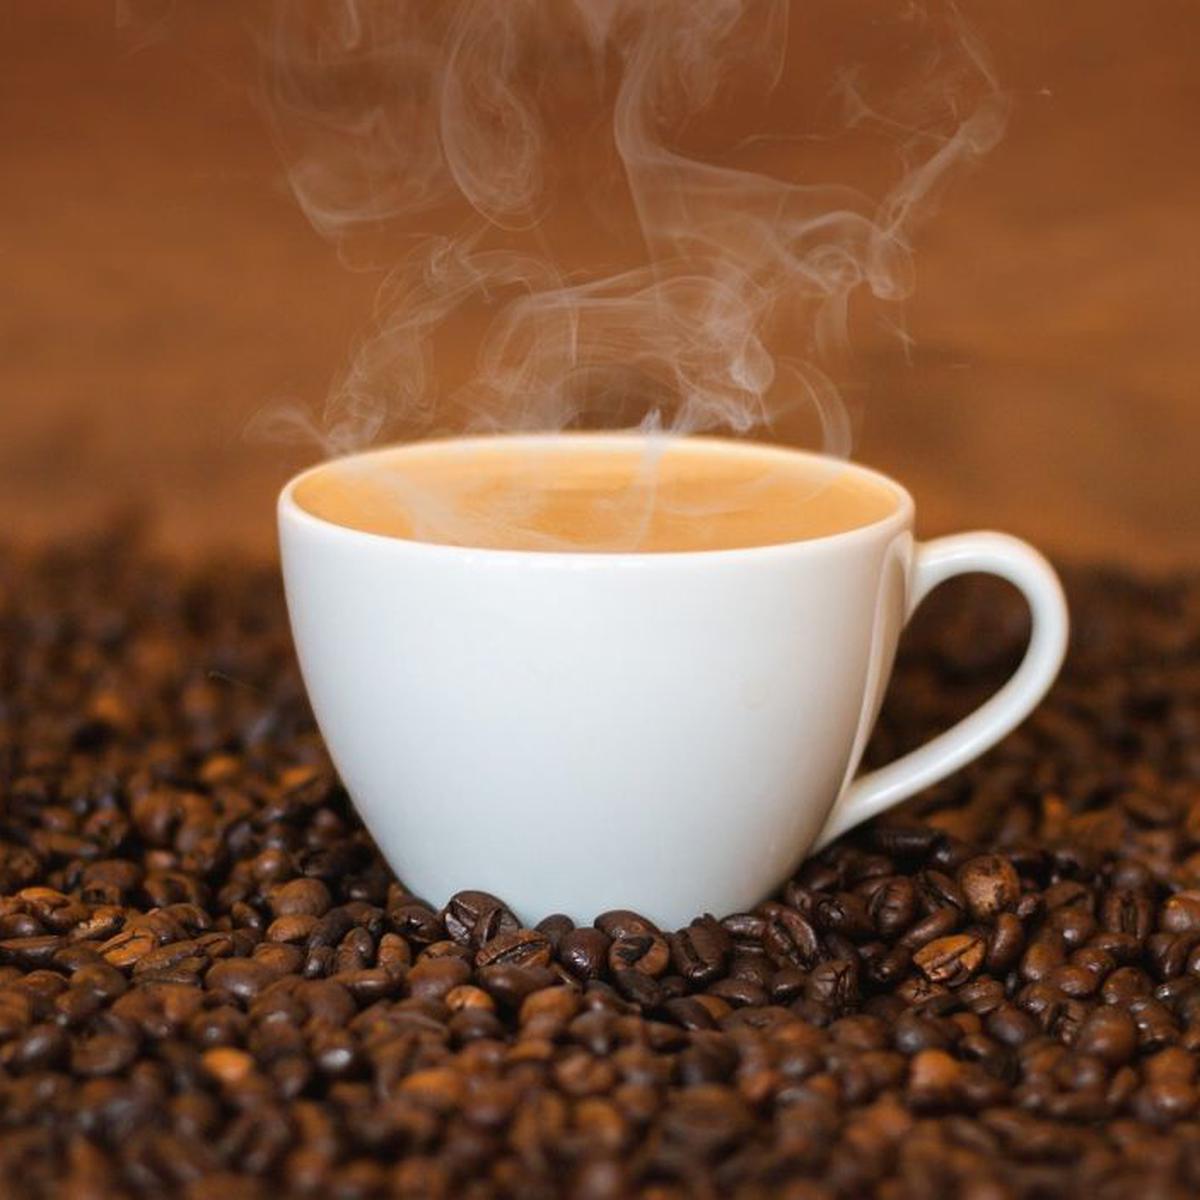 Cómo preparar una buena taza de café?